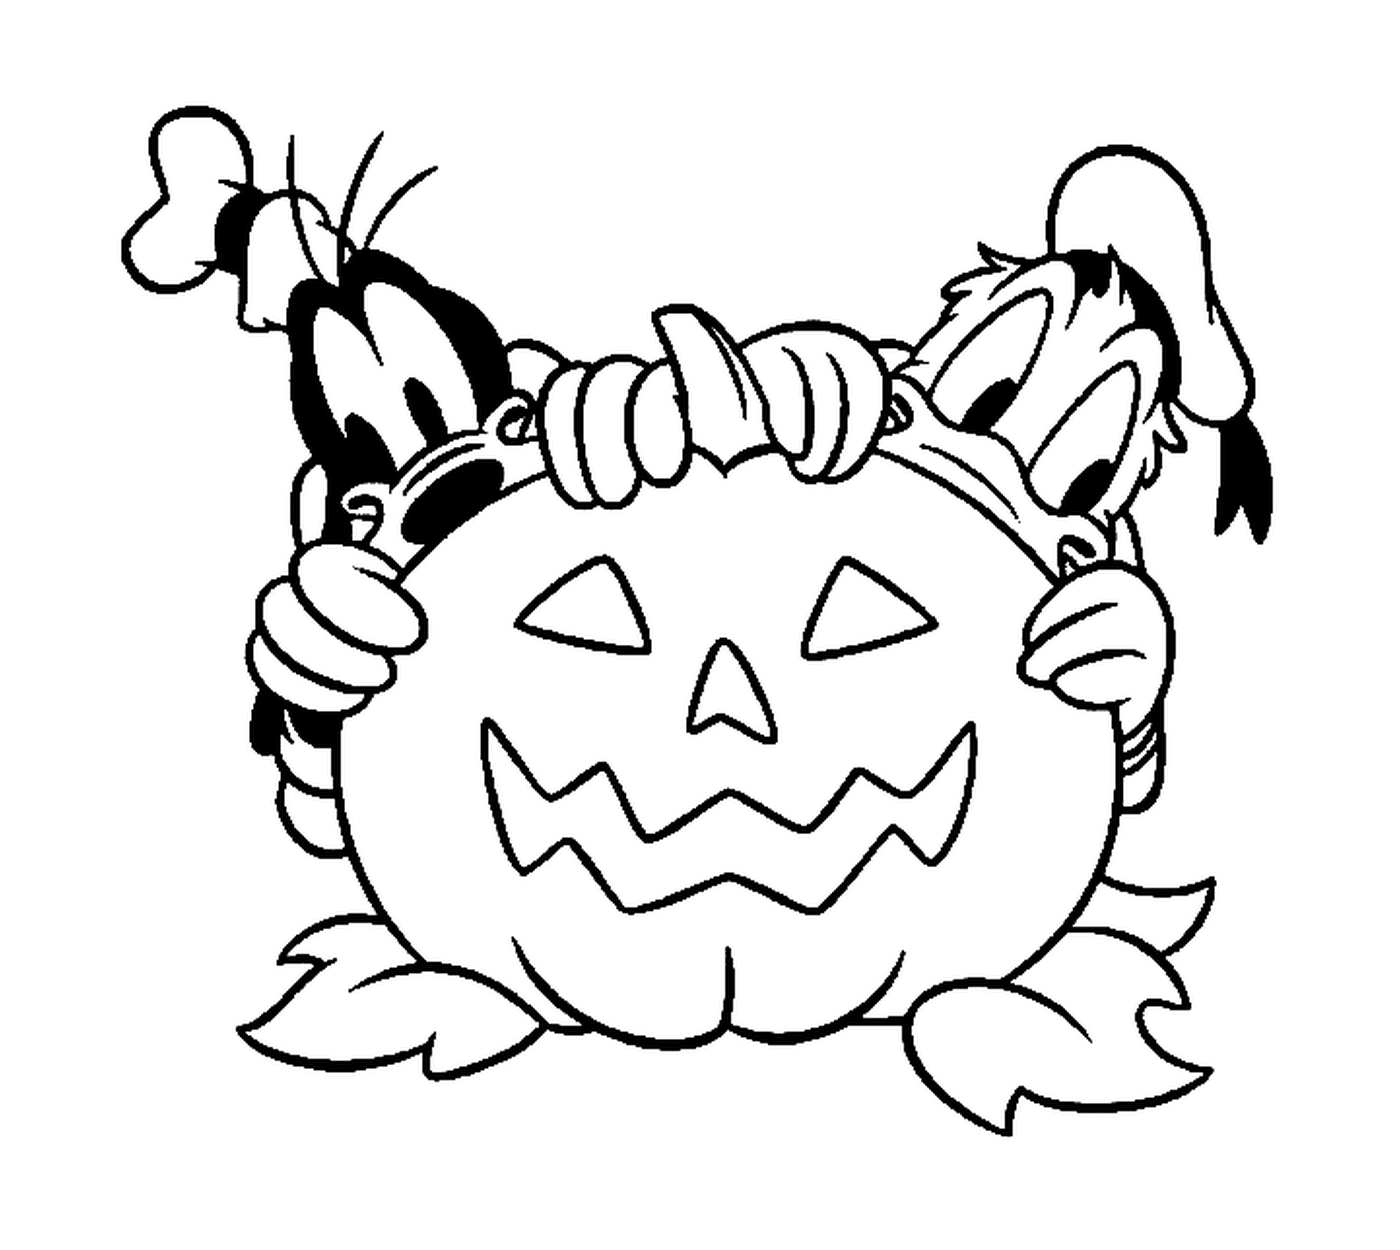  Donald y Dingo se esconden detrás de una calabaza de Halloween 